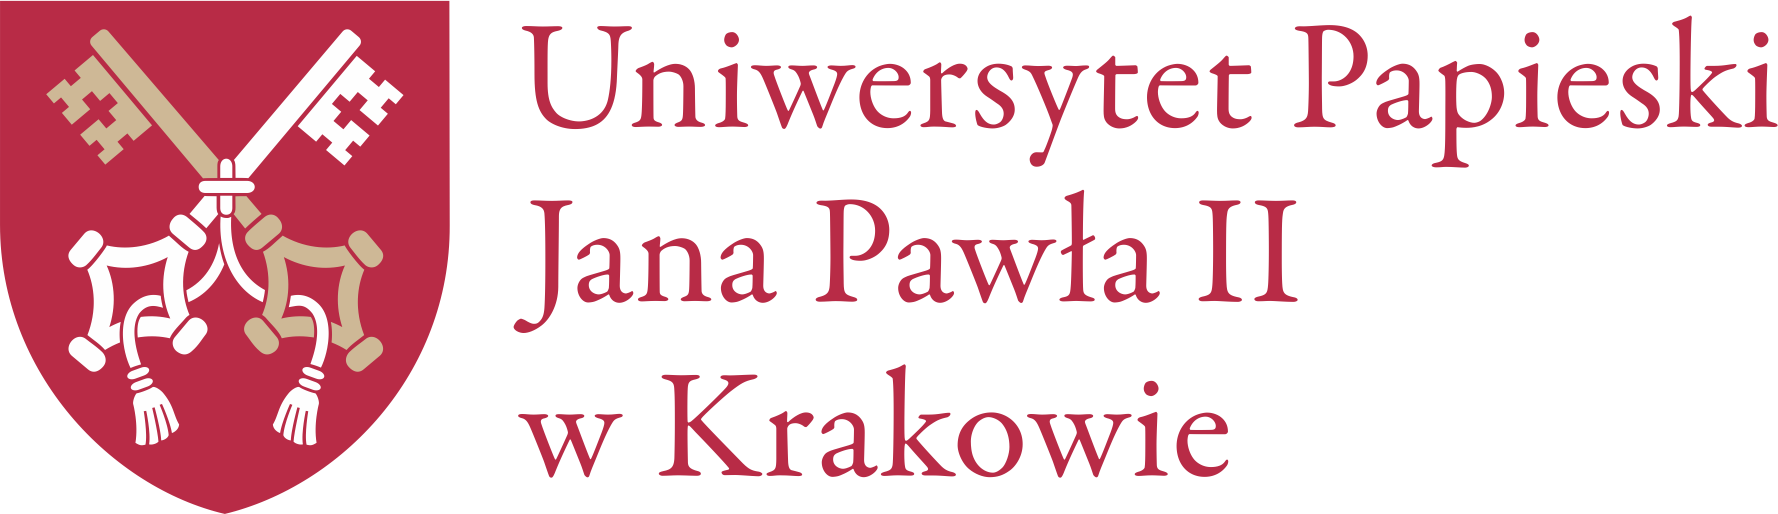 uniwersytet_papieski_jana_pawla_ii_w_krakowie_logo_2.png